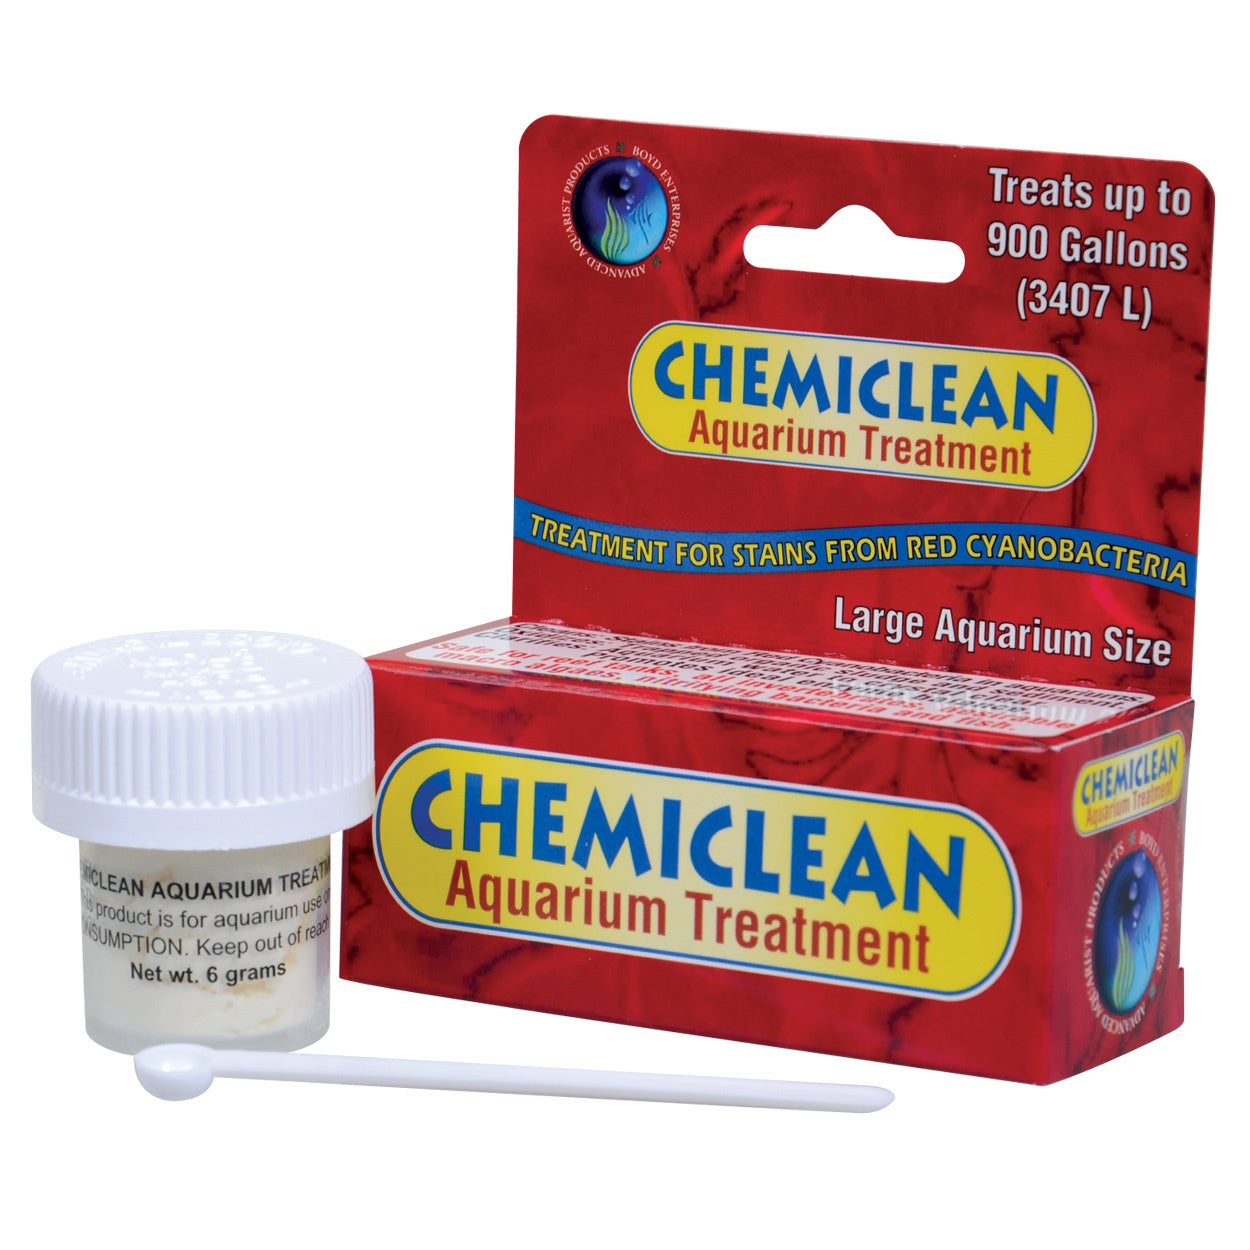 Chemiclean Aquarium Treatment